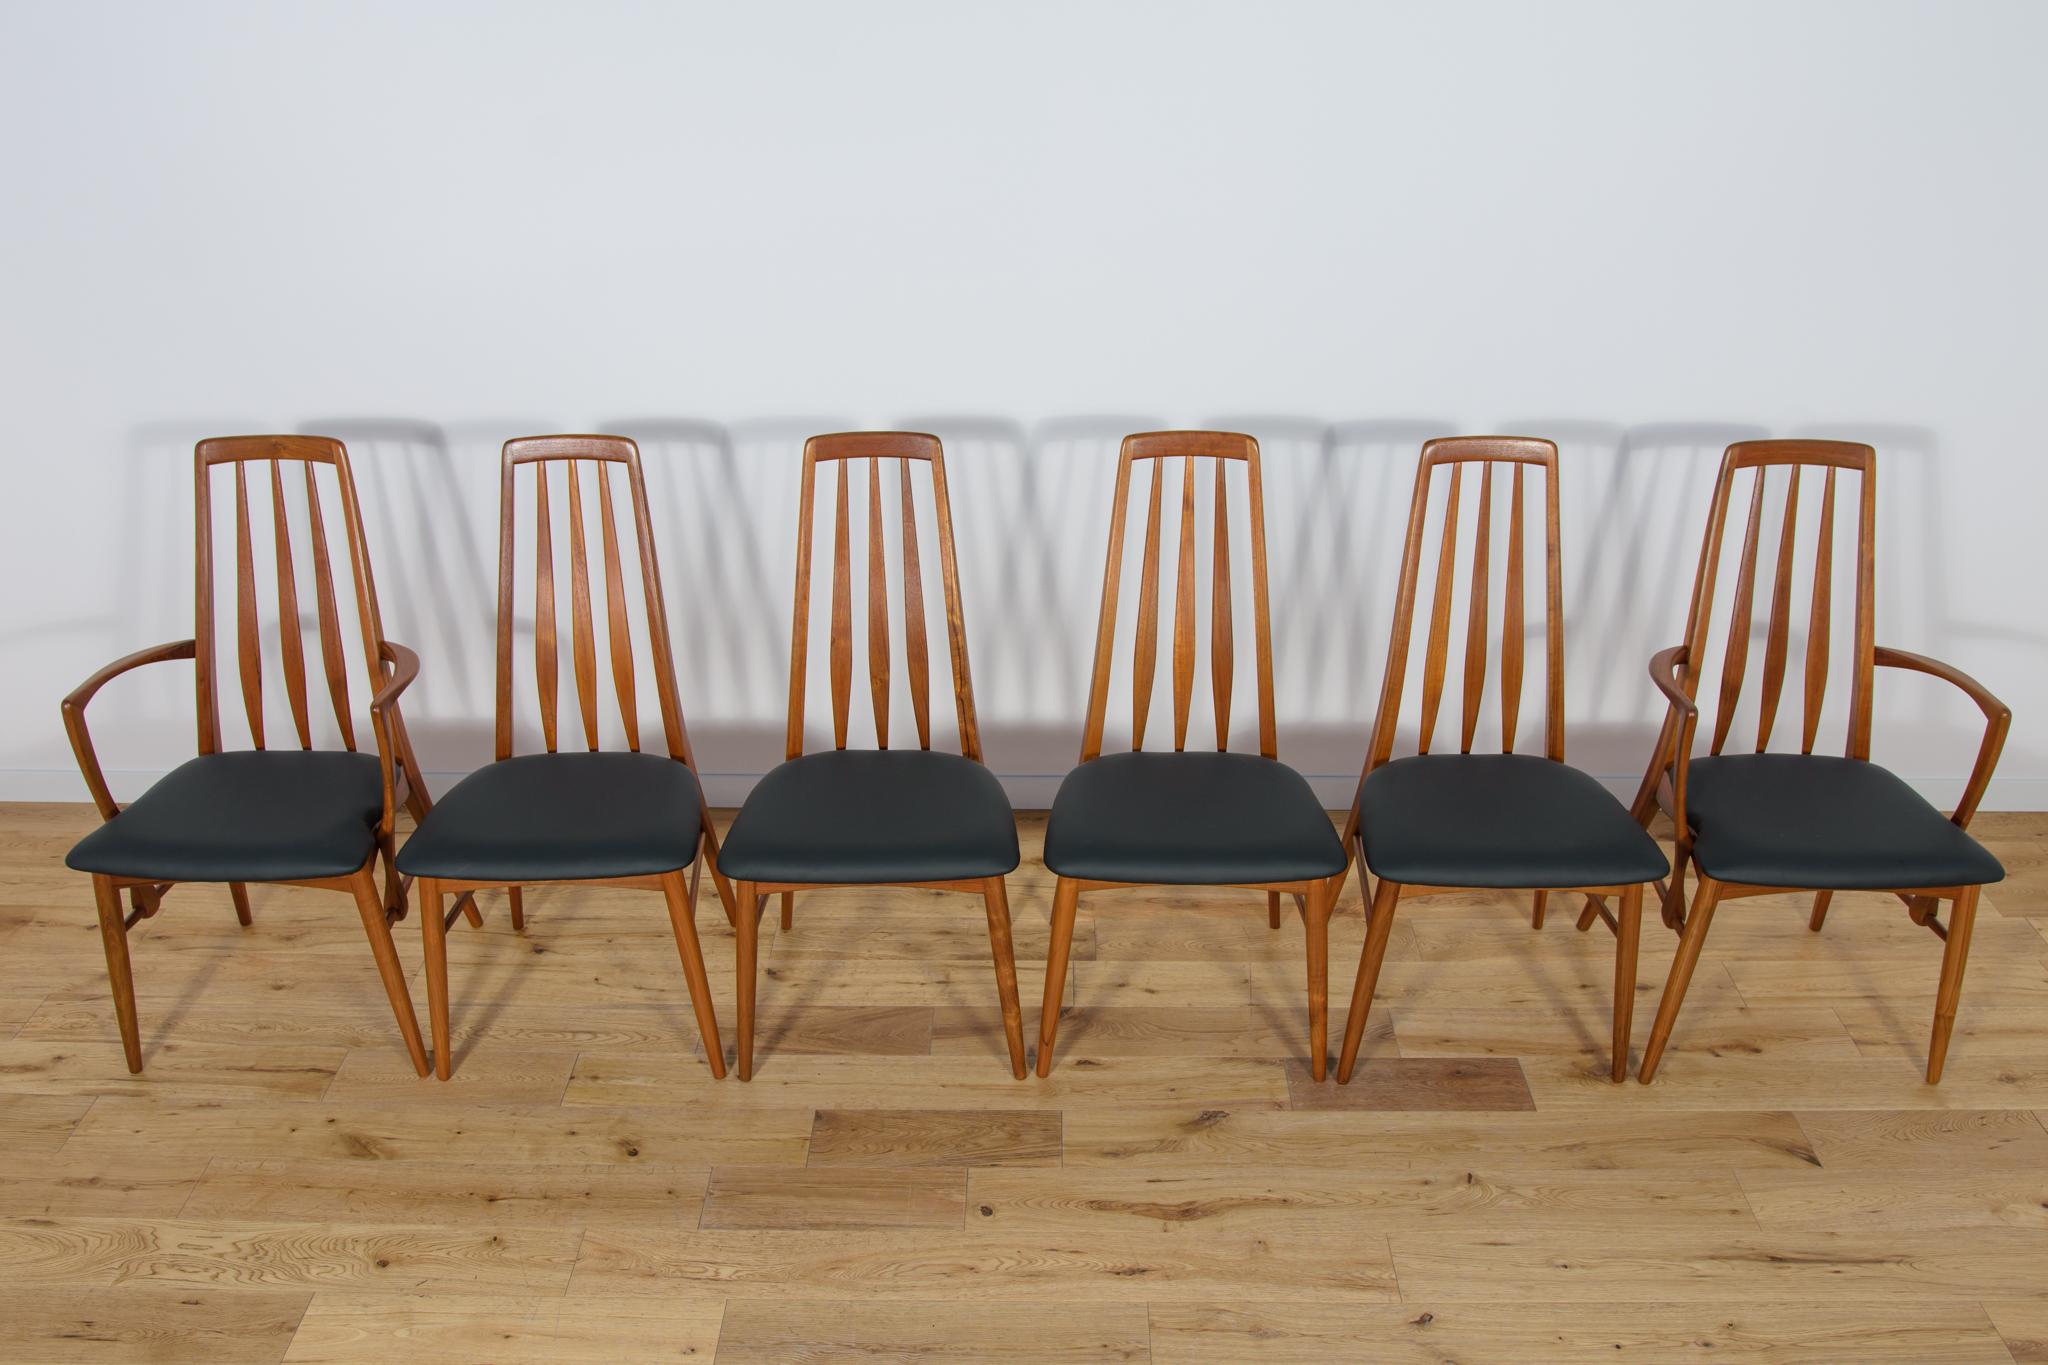 Cet ensemble se compose de quatre chaises et de deux fauteuils. La chaise Eva a été conçue par Niels Koefoed en 1964 et fabriquée par Koefoeds Hornslet au Danemark. Les cadres sont en teck massif. Les éléments en teck sont nettoyés de l'ancienne